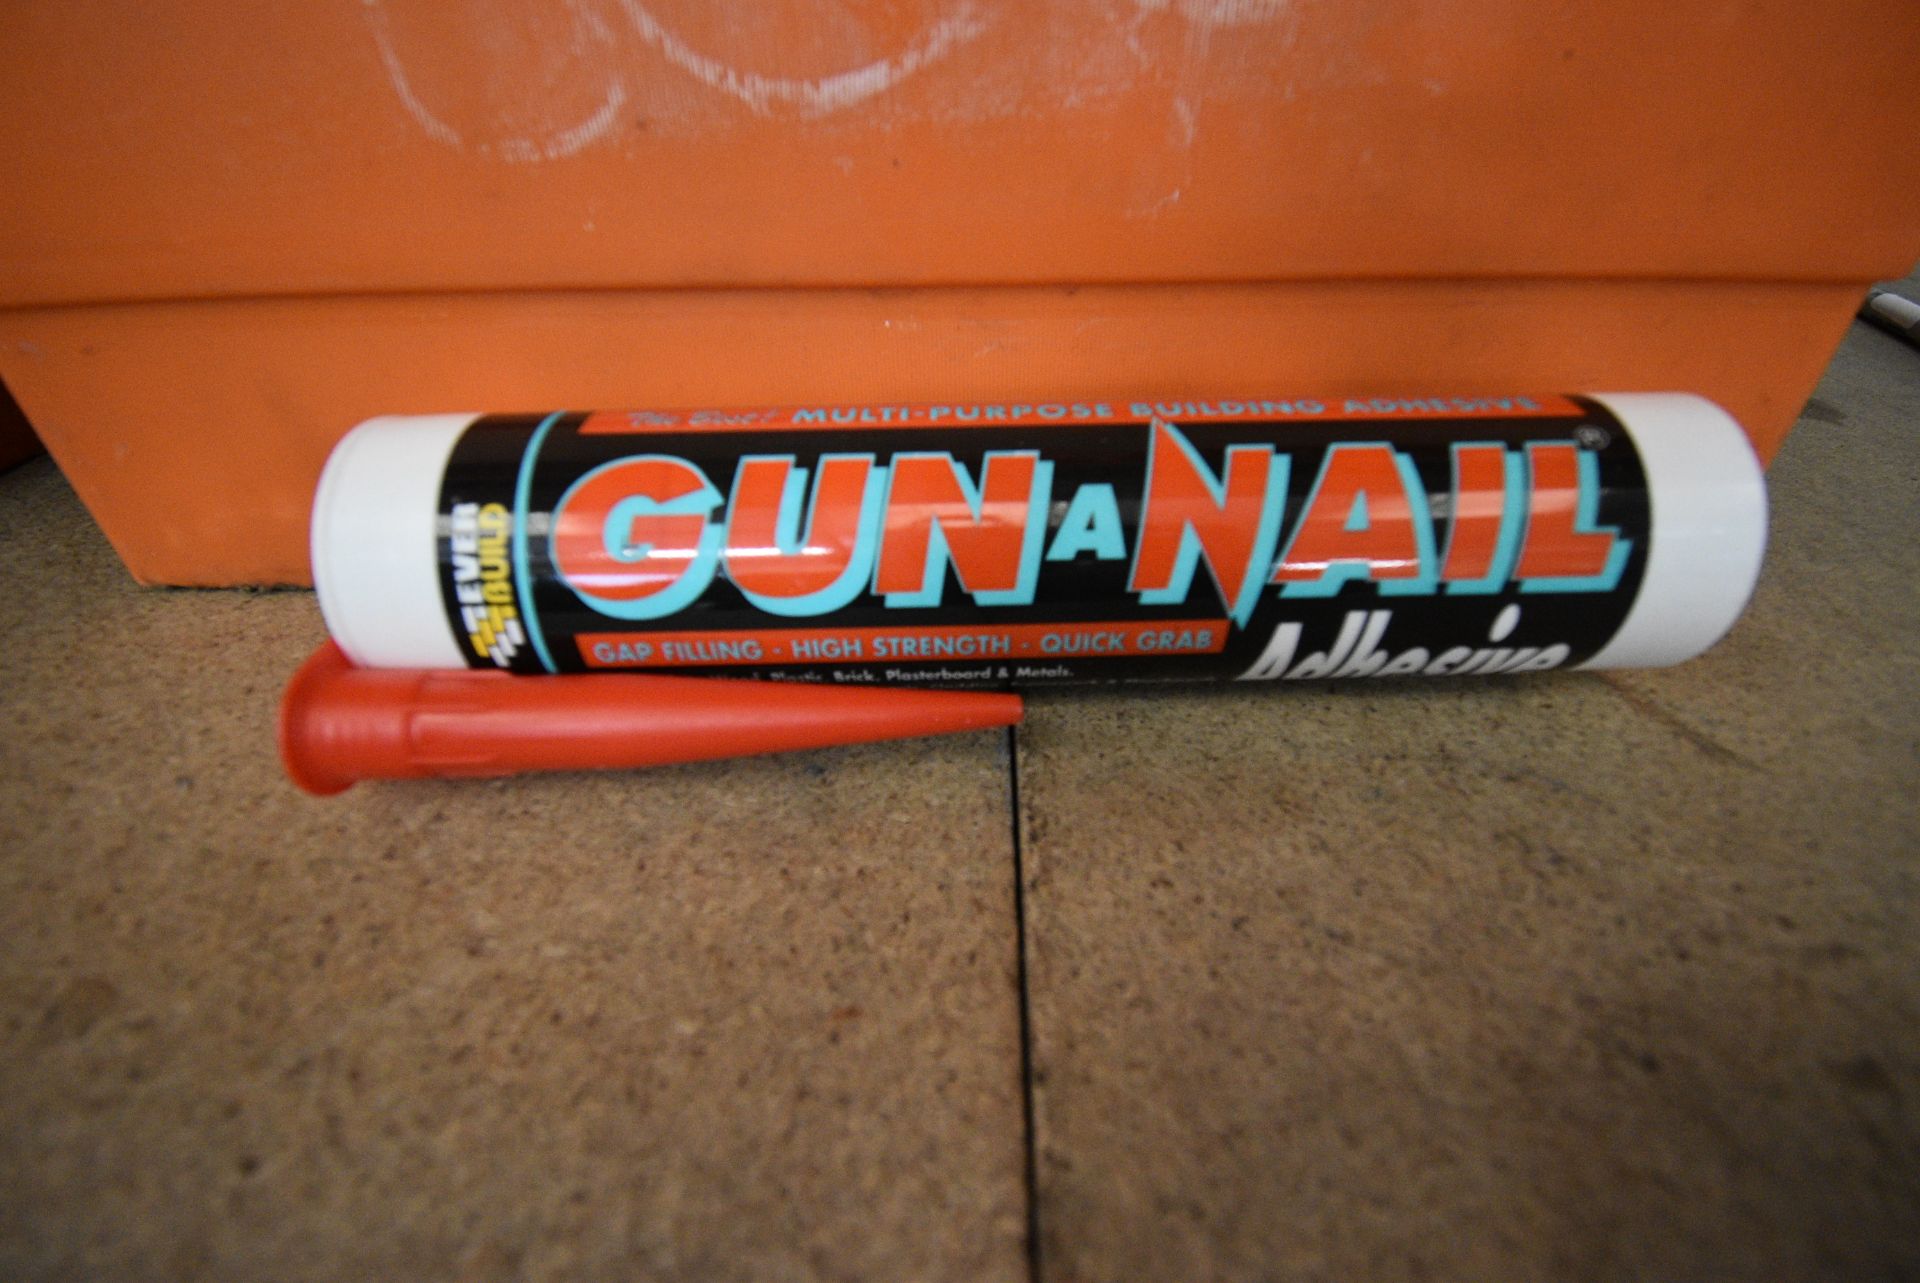 Crate of Gun & Nail Multipurpose Adhesive - Image 2 of 2